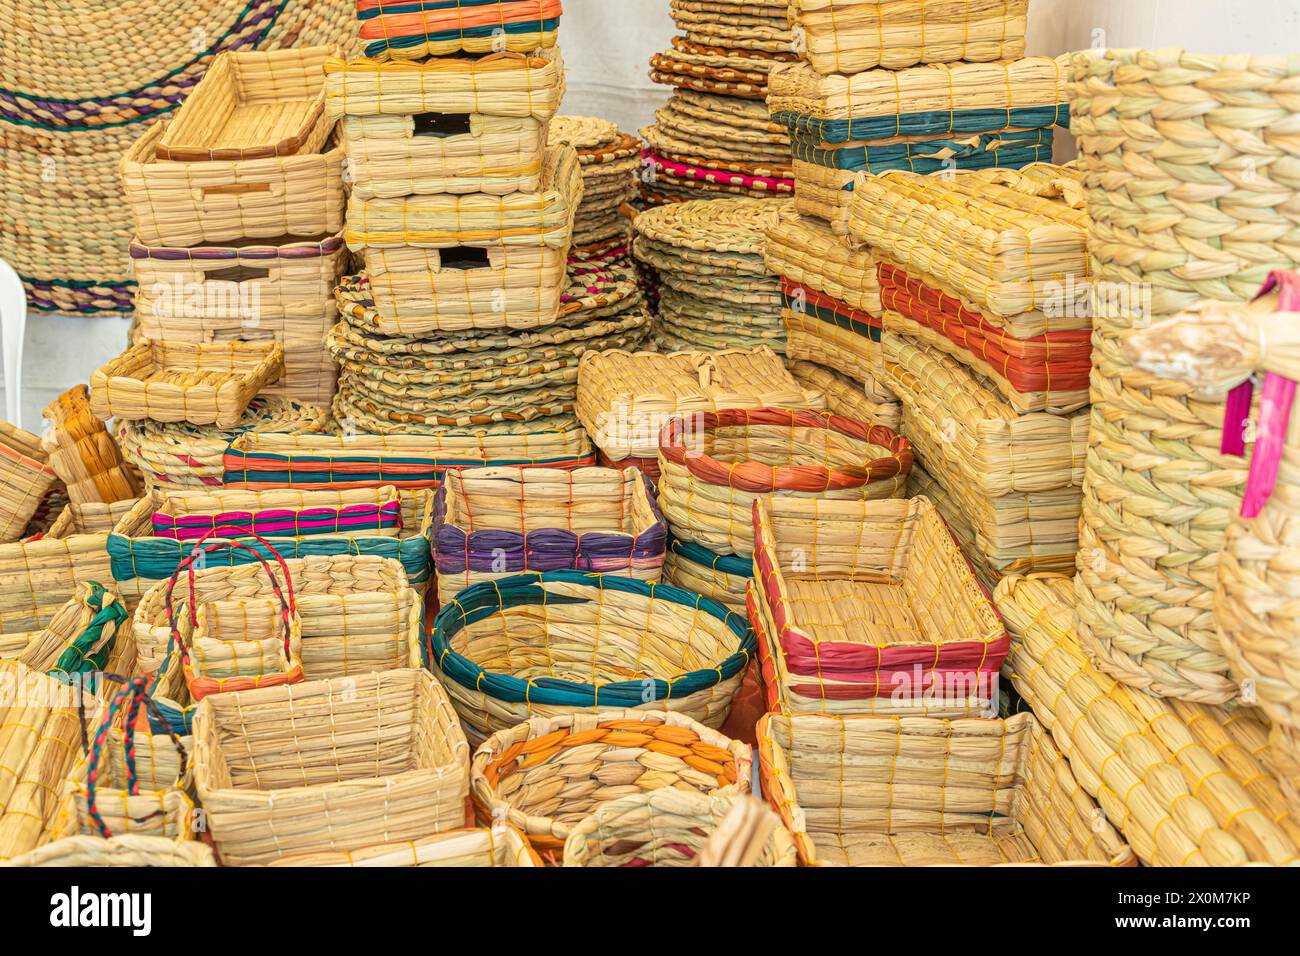 Artesanías totora como cestas, cajas, alfombrillas hechas de fibra vegetal natural, hechas a mano por artesanos de la provincia de Imbabura del Ecuador Foto de stock